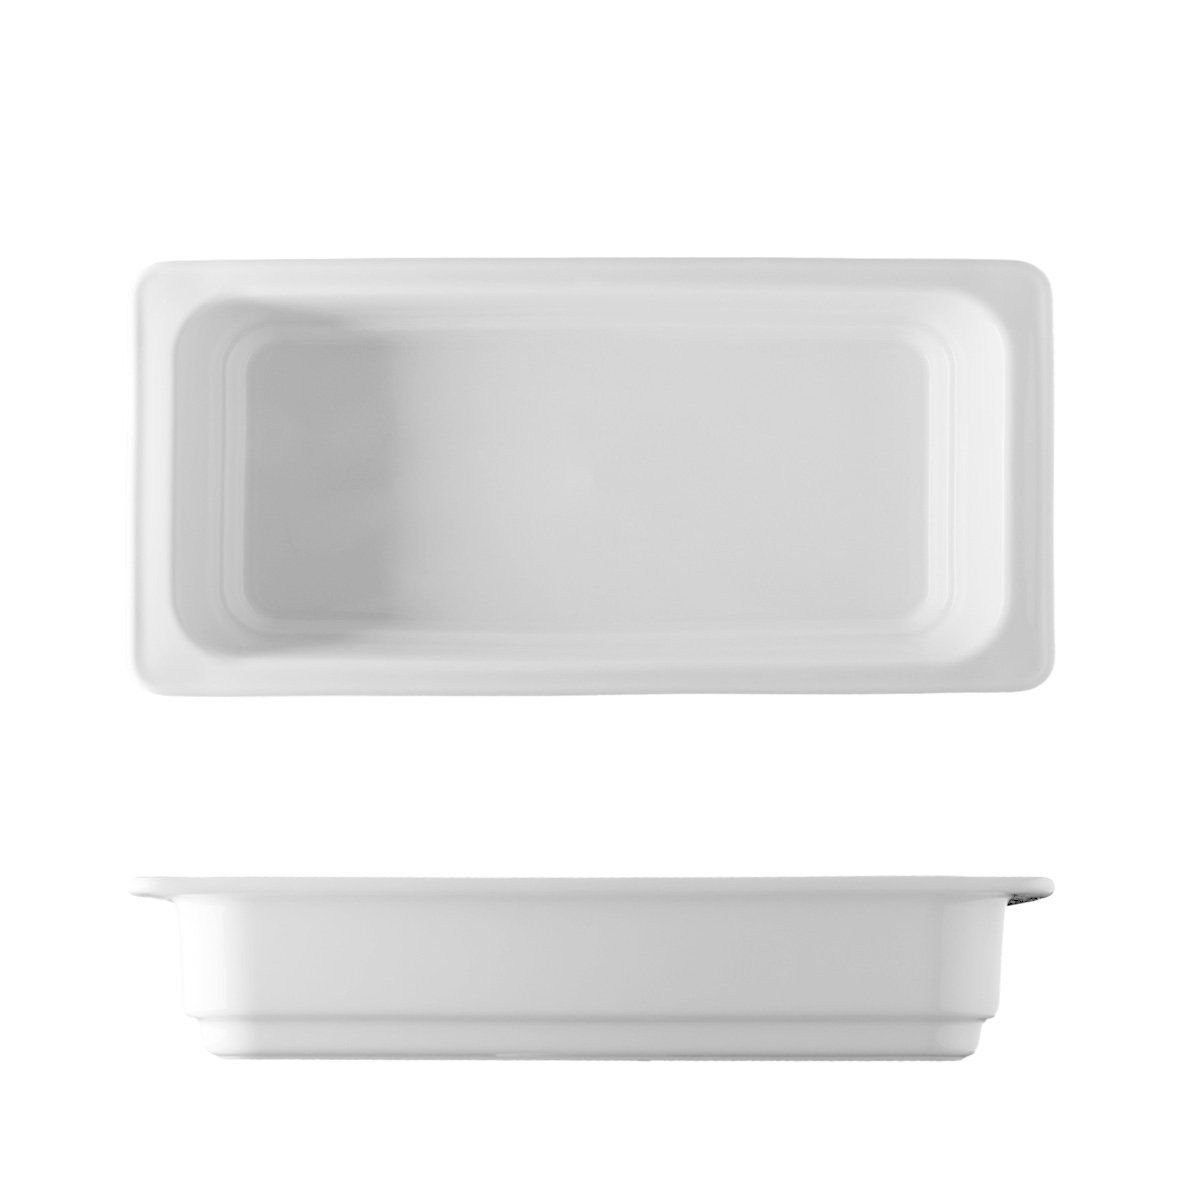 GN-Behälter 1/3-65mm Porzellan weiß